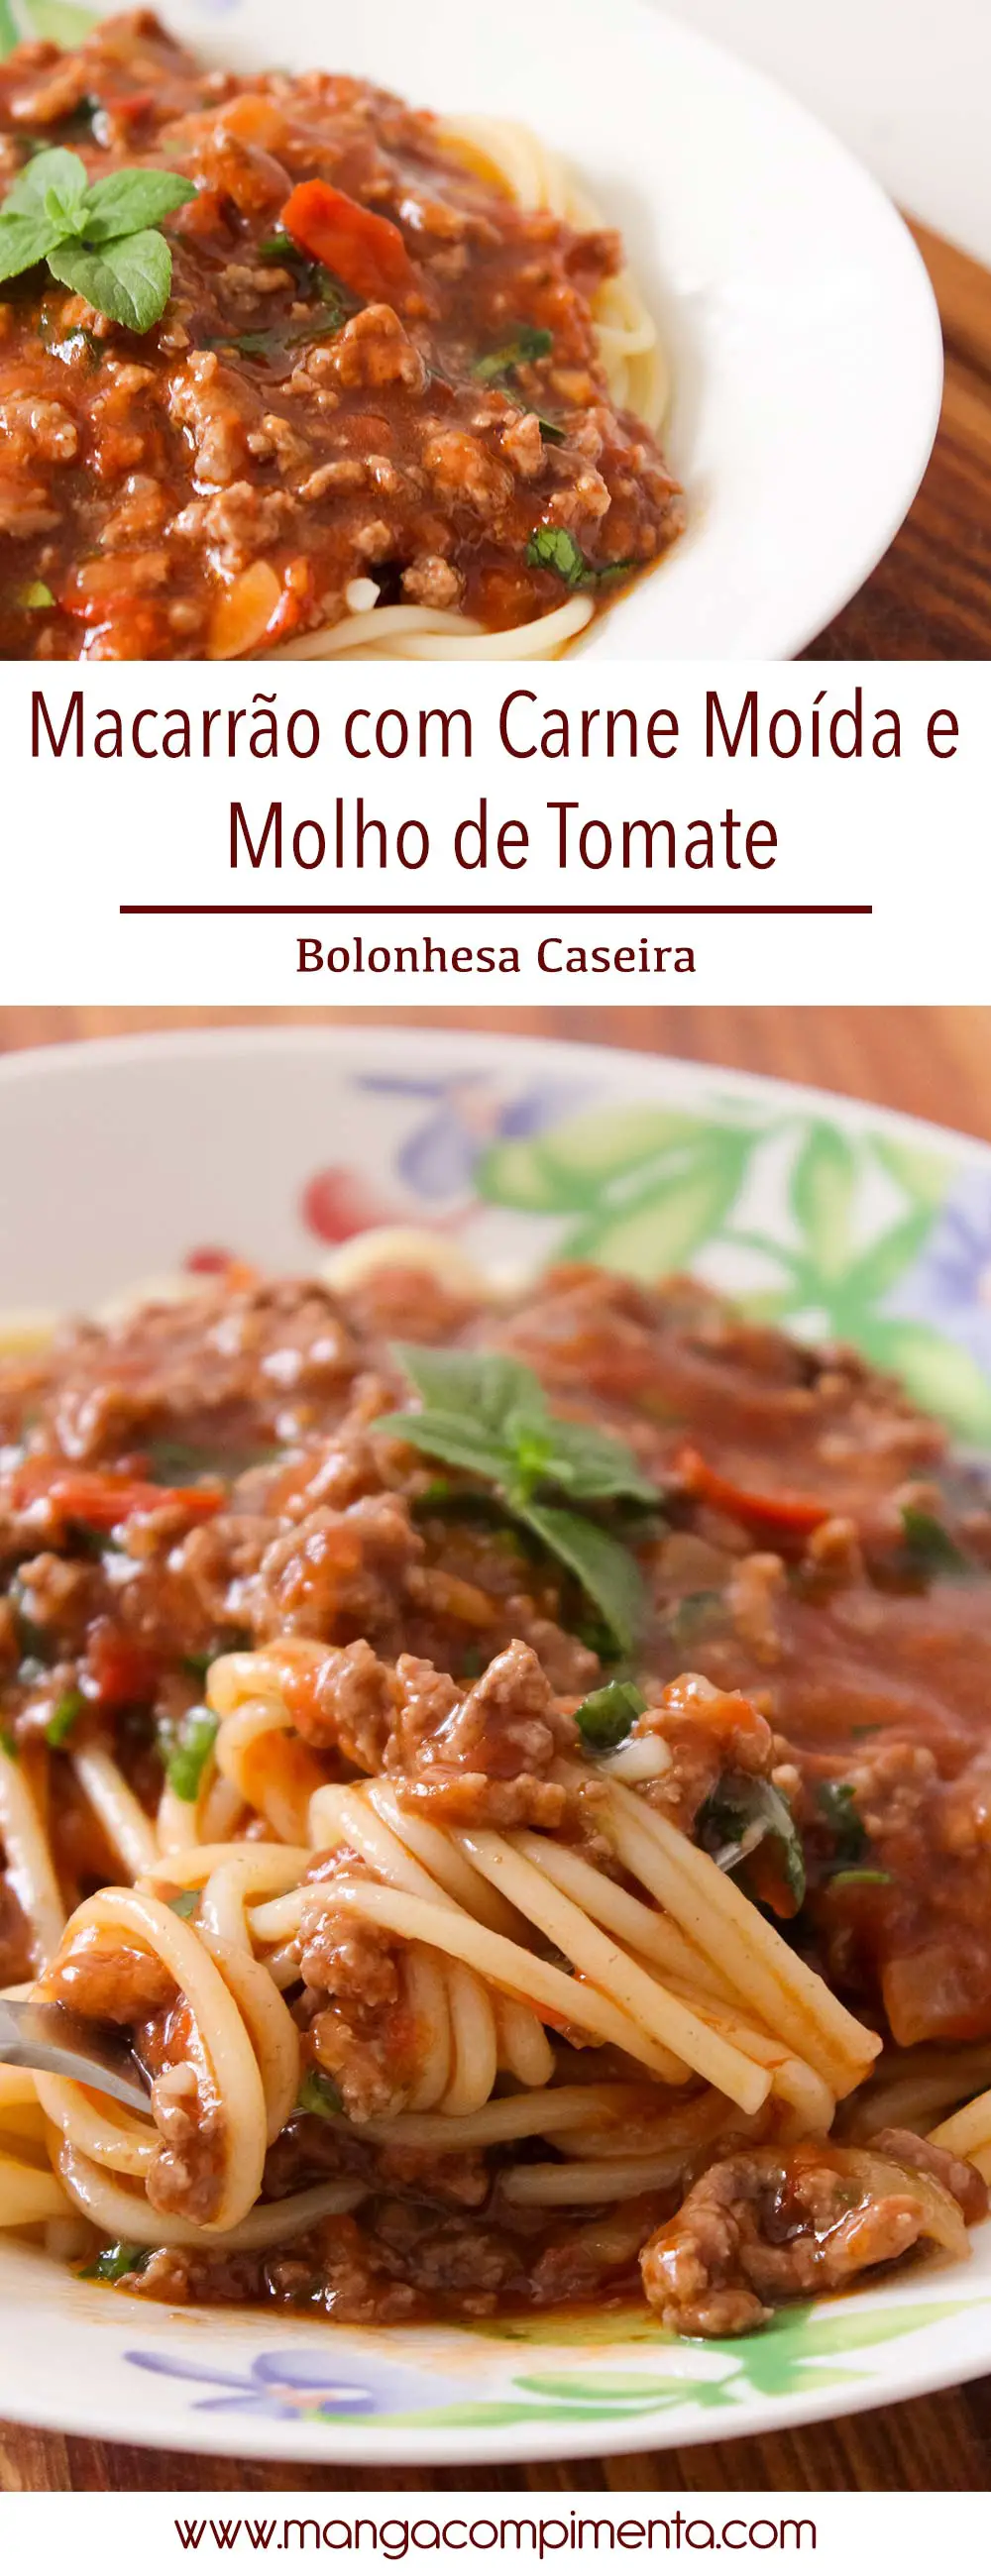 Macarrão com Carne Moída e Molho de Tomate | Bolonhesa Caseira